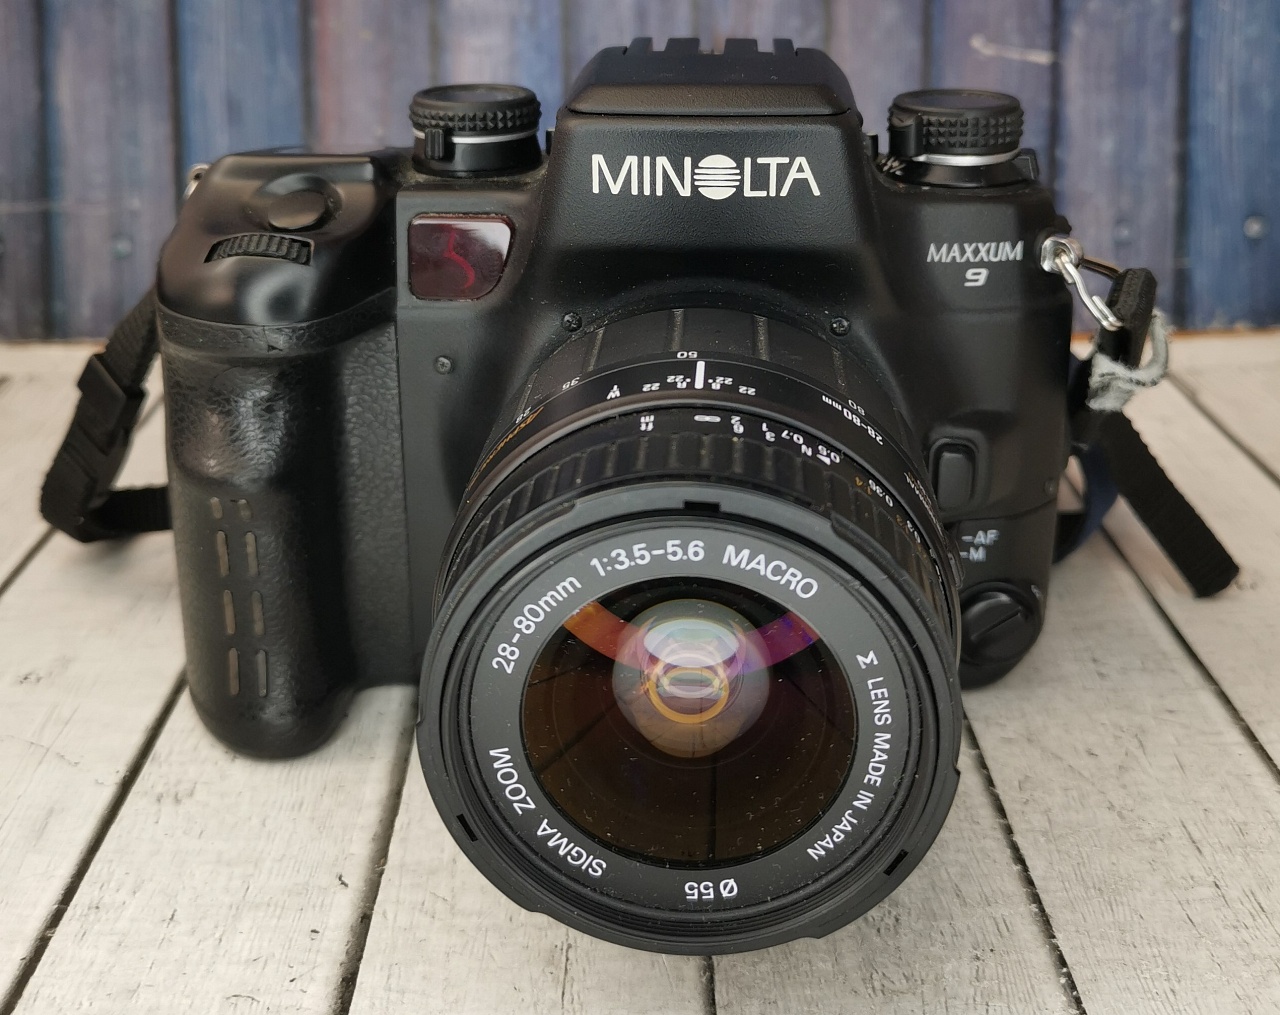 Minolta MAXXUM 9 + Sigma Zoom 28-80 f/3,5-5,6 фото №2